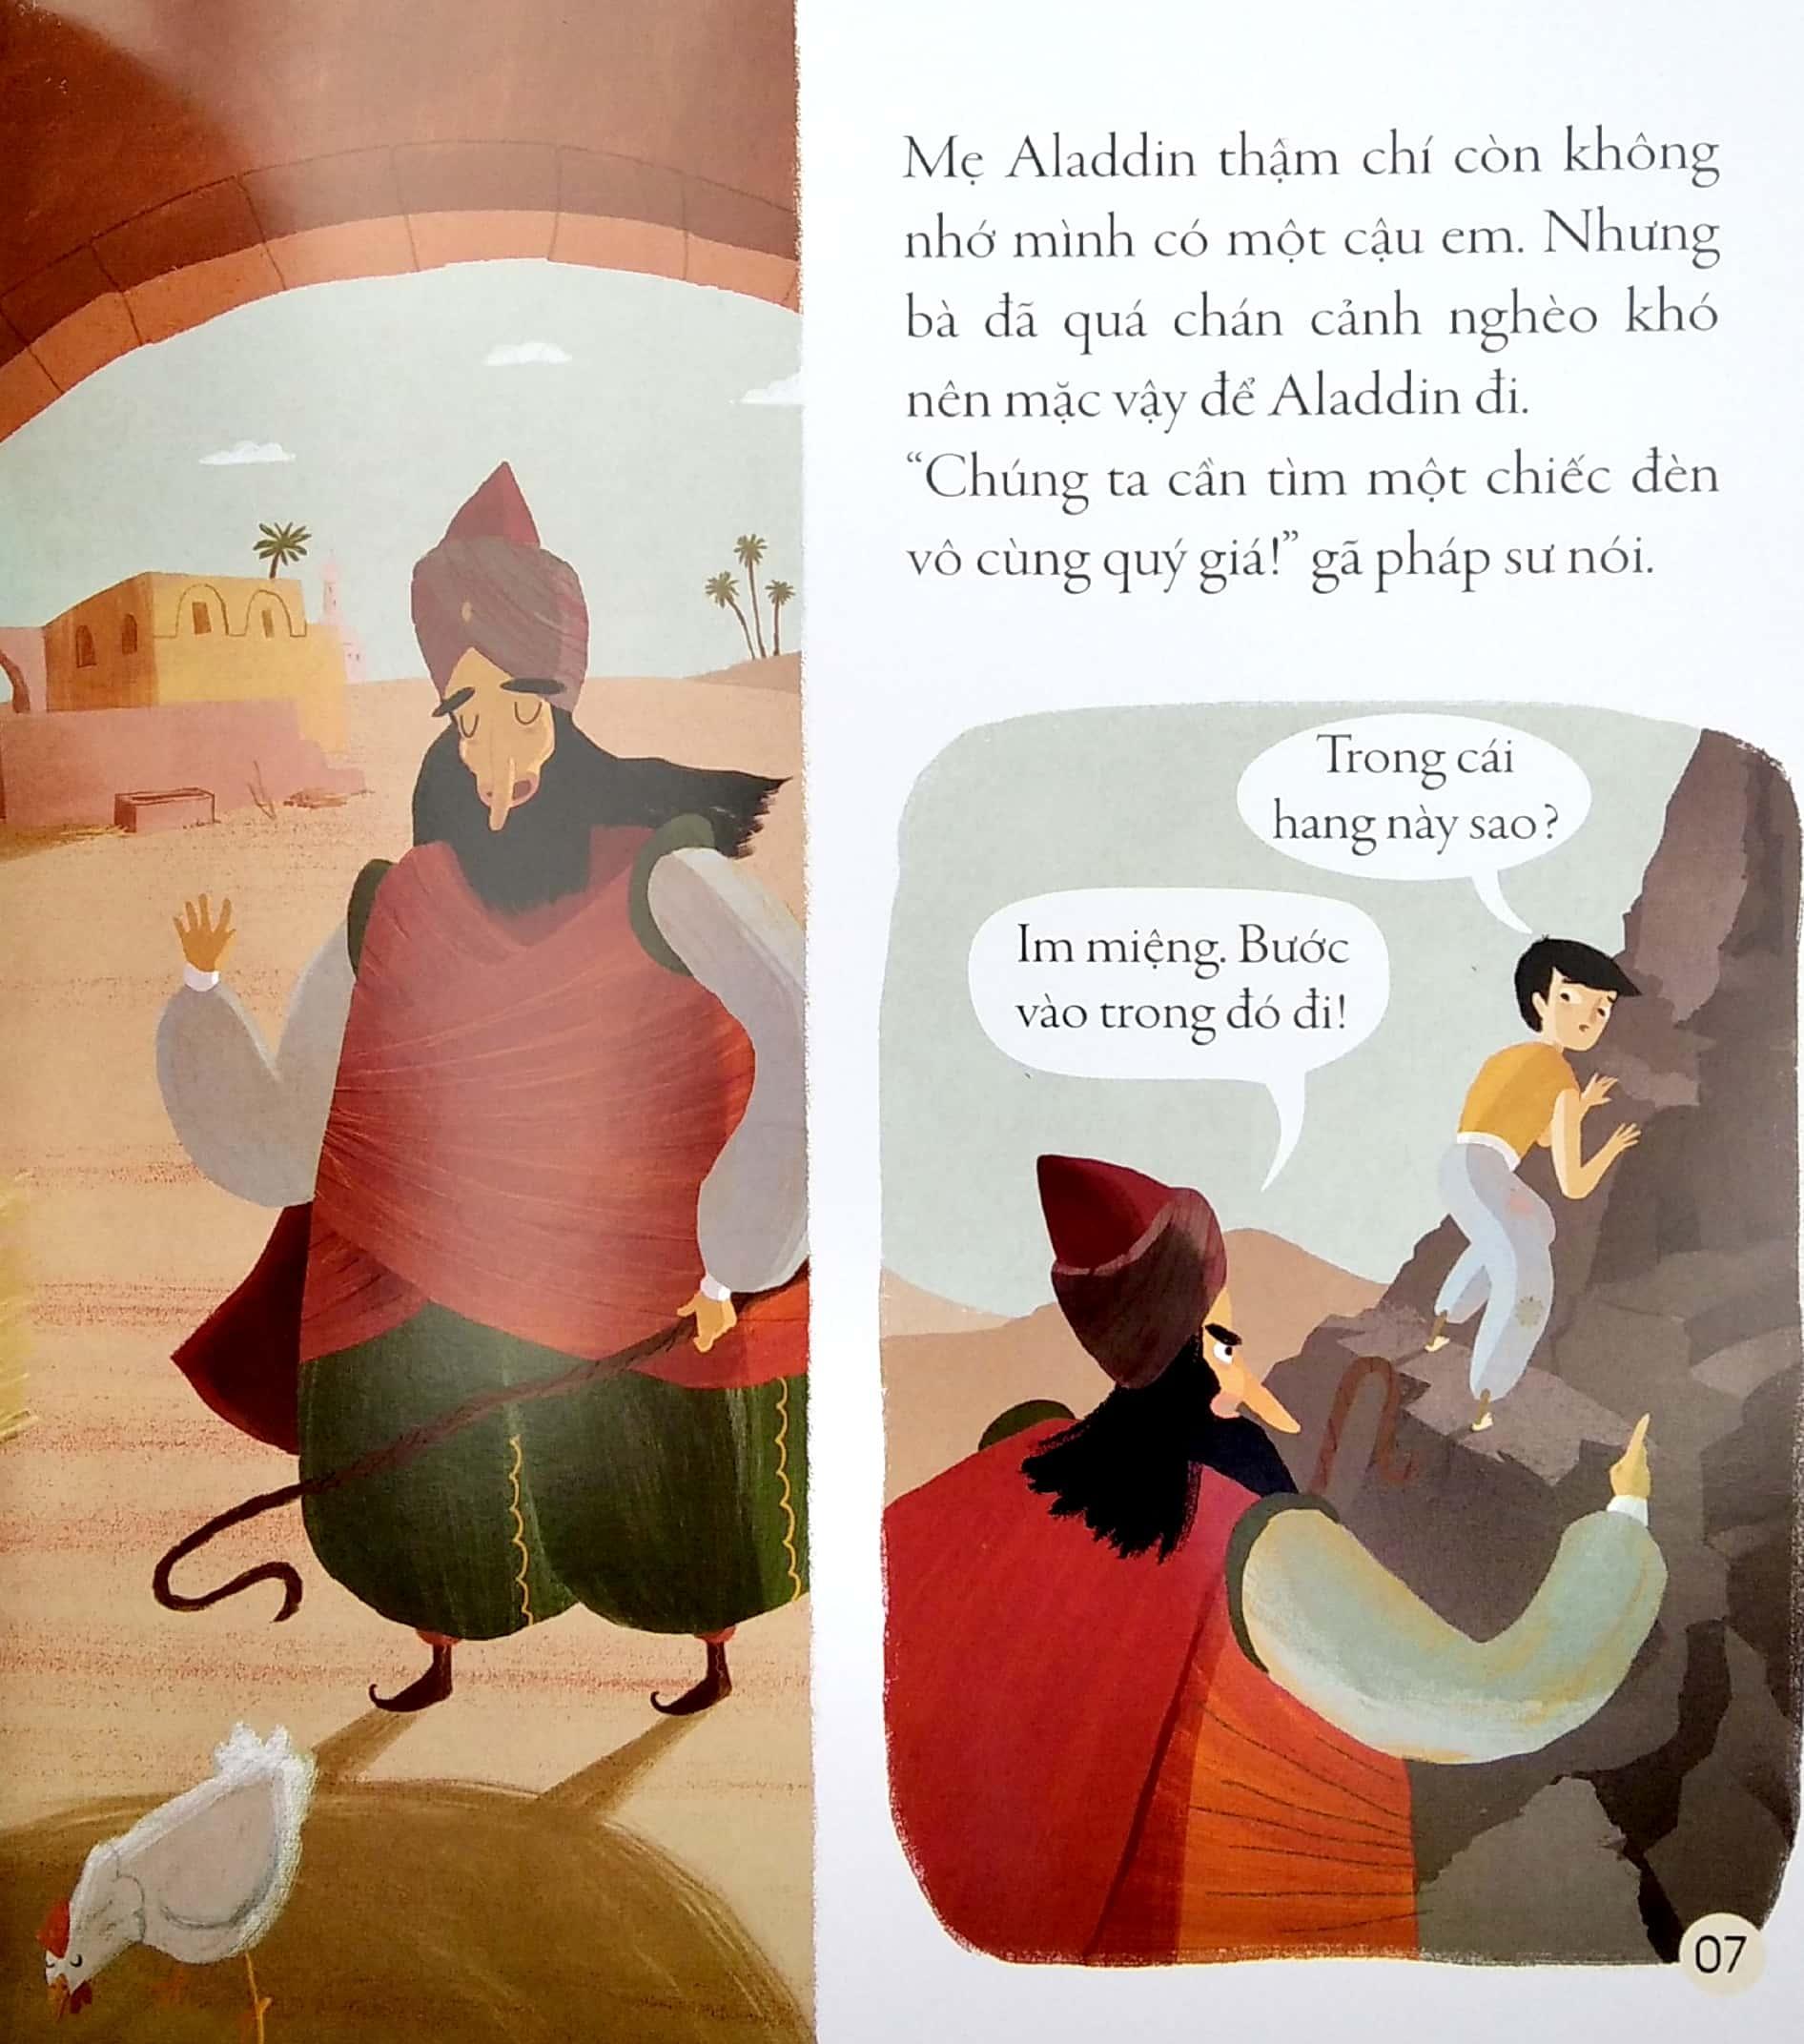 Truyện Cổ Tích Kinh Điển - Aladdin Và Cây Đèn Thần